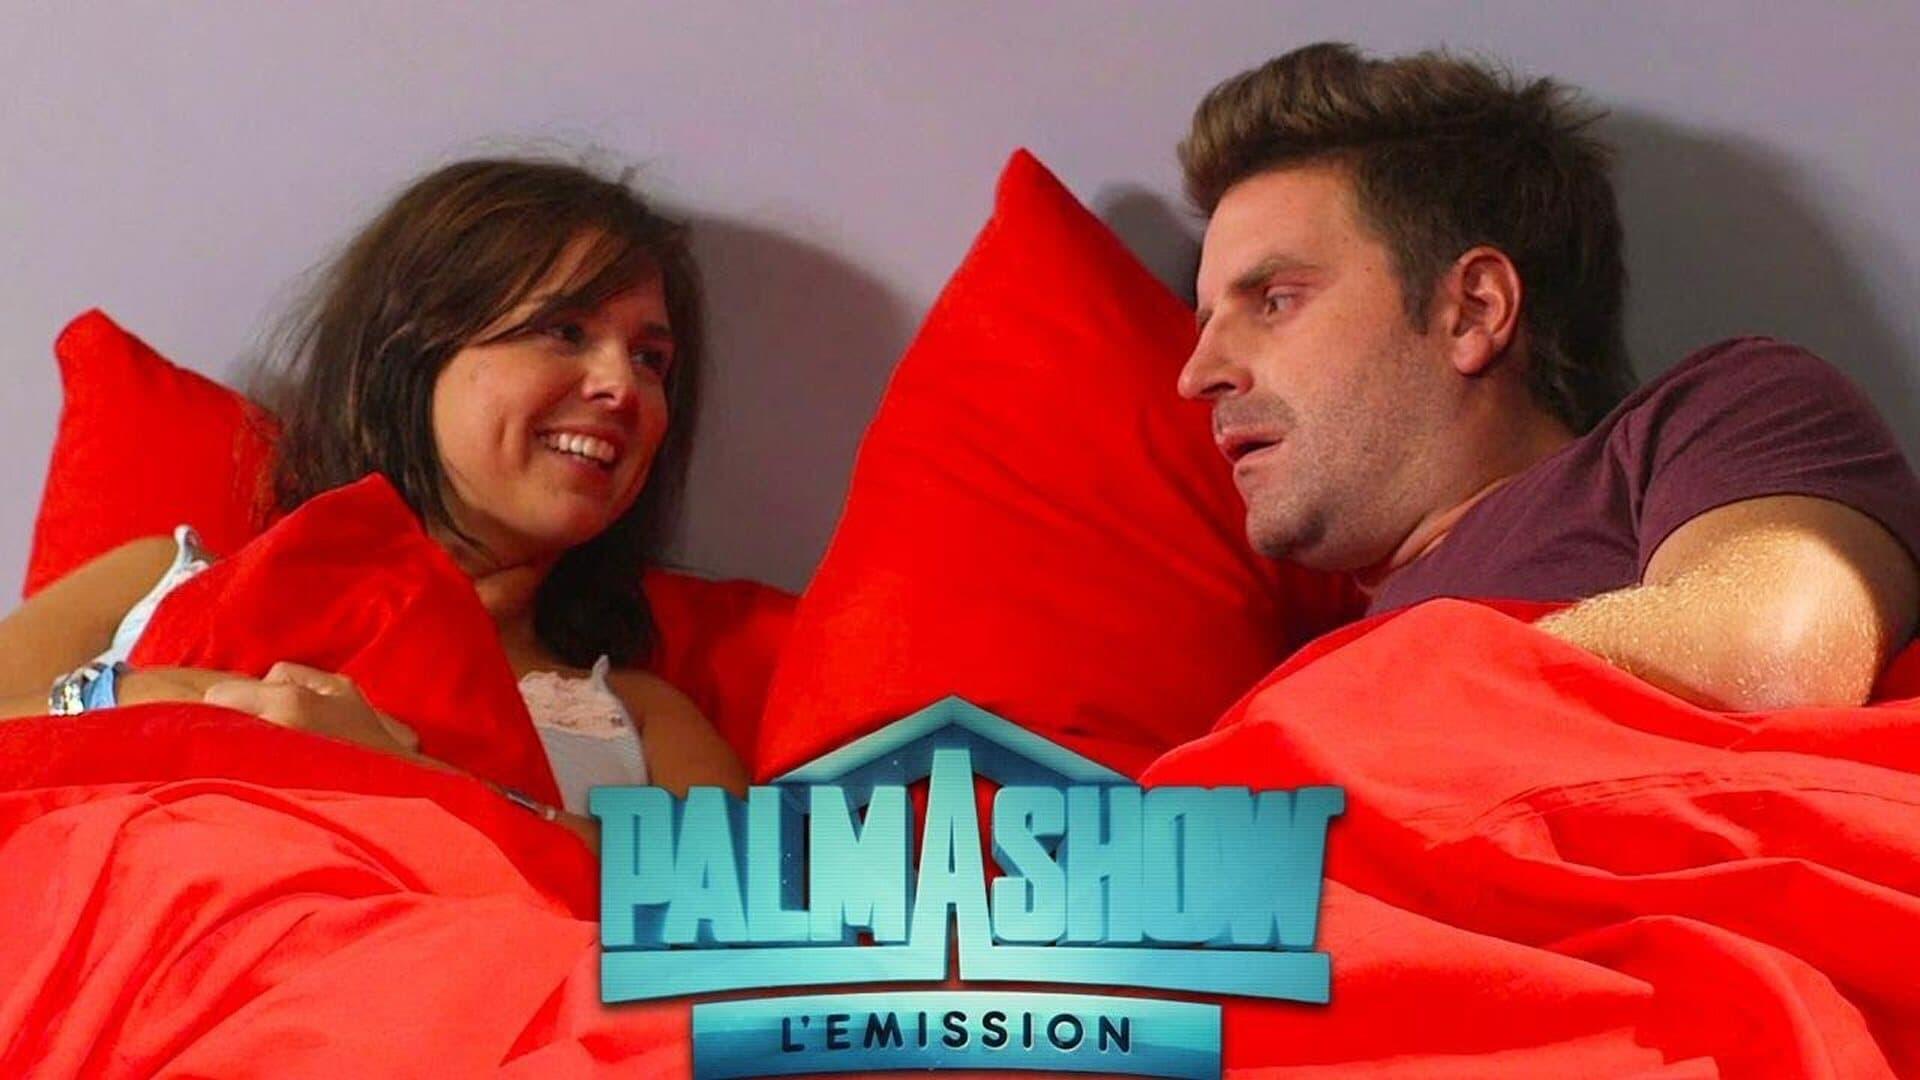 Palmashow - L'émission backdrop